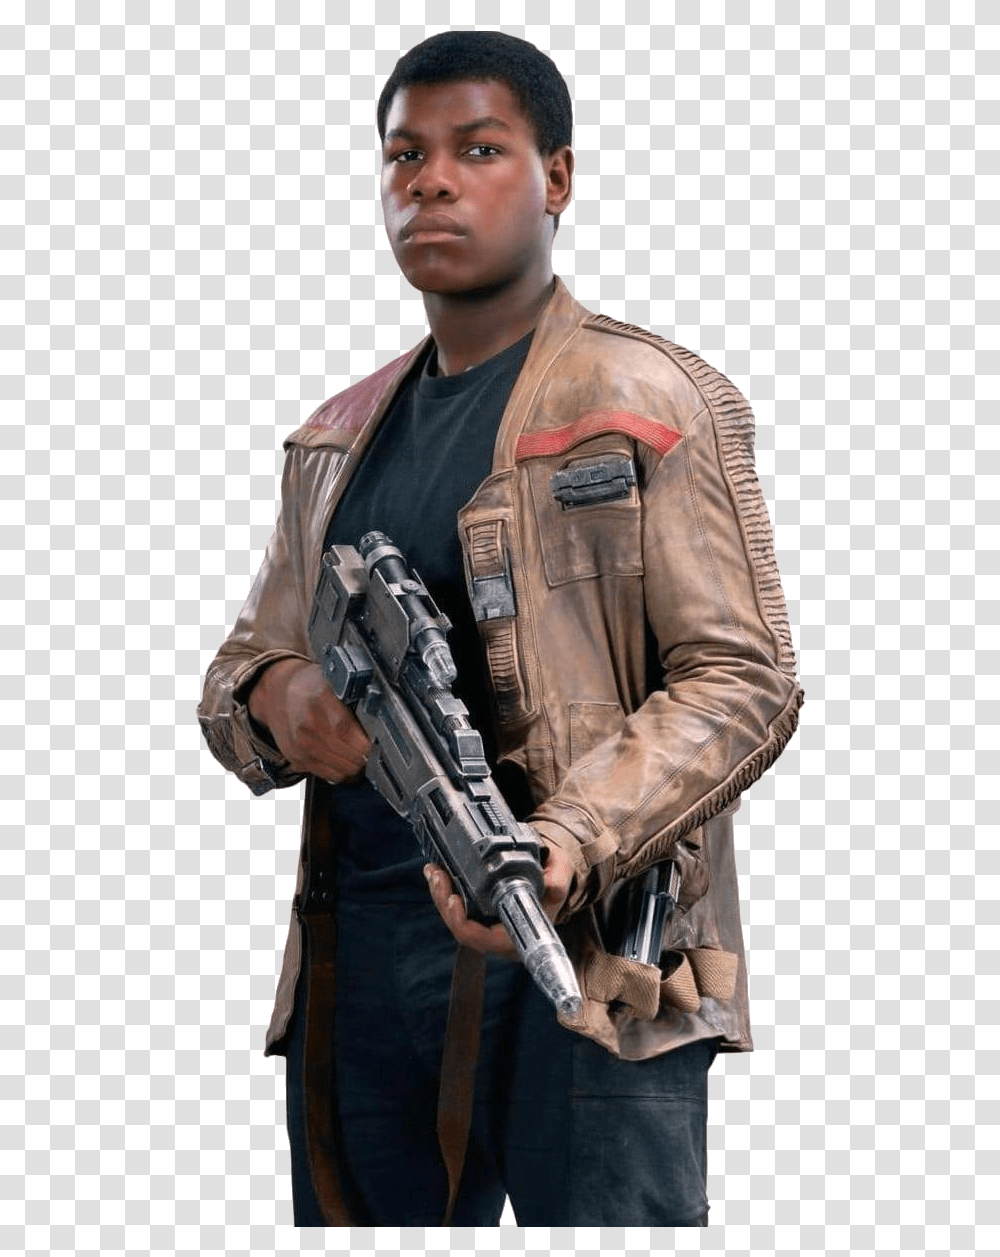 Star Wars Finn Jacket, Apparel, Gun, Weapon Transparent Png